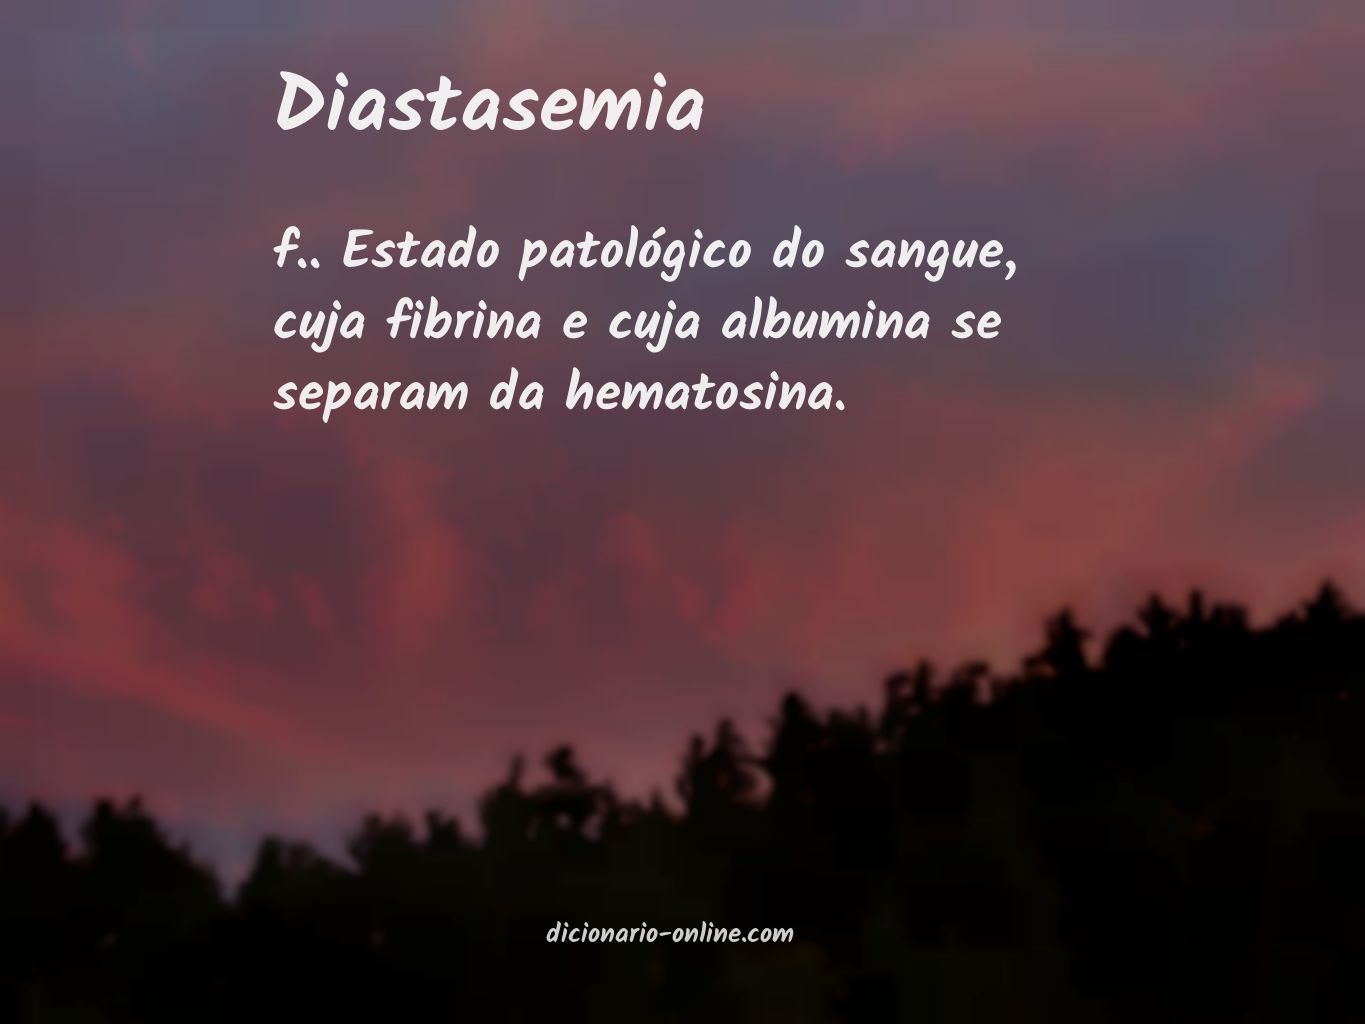 Significado de diastasemia